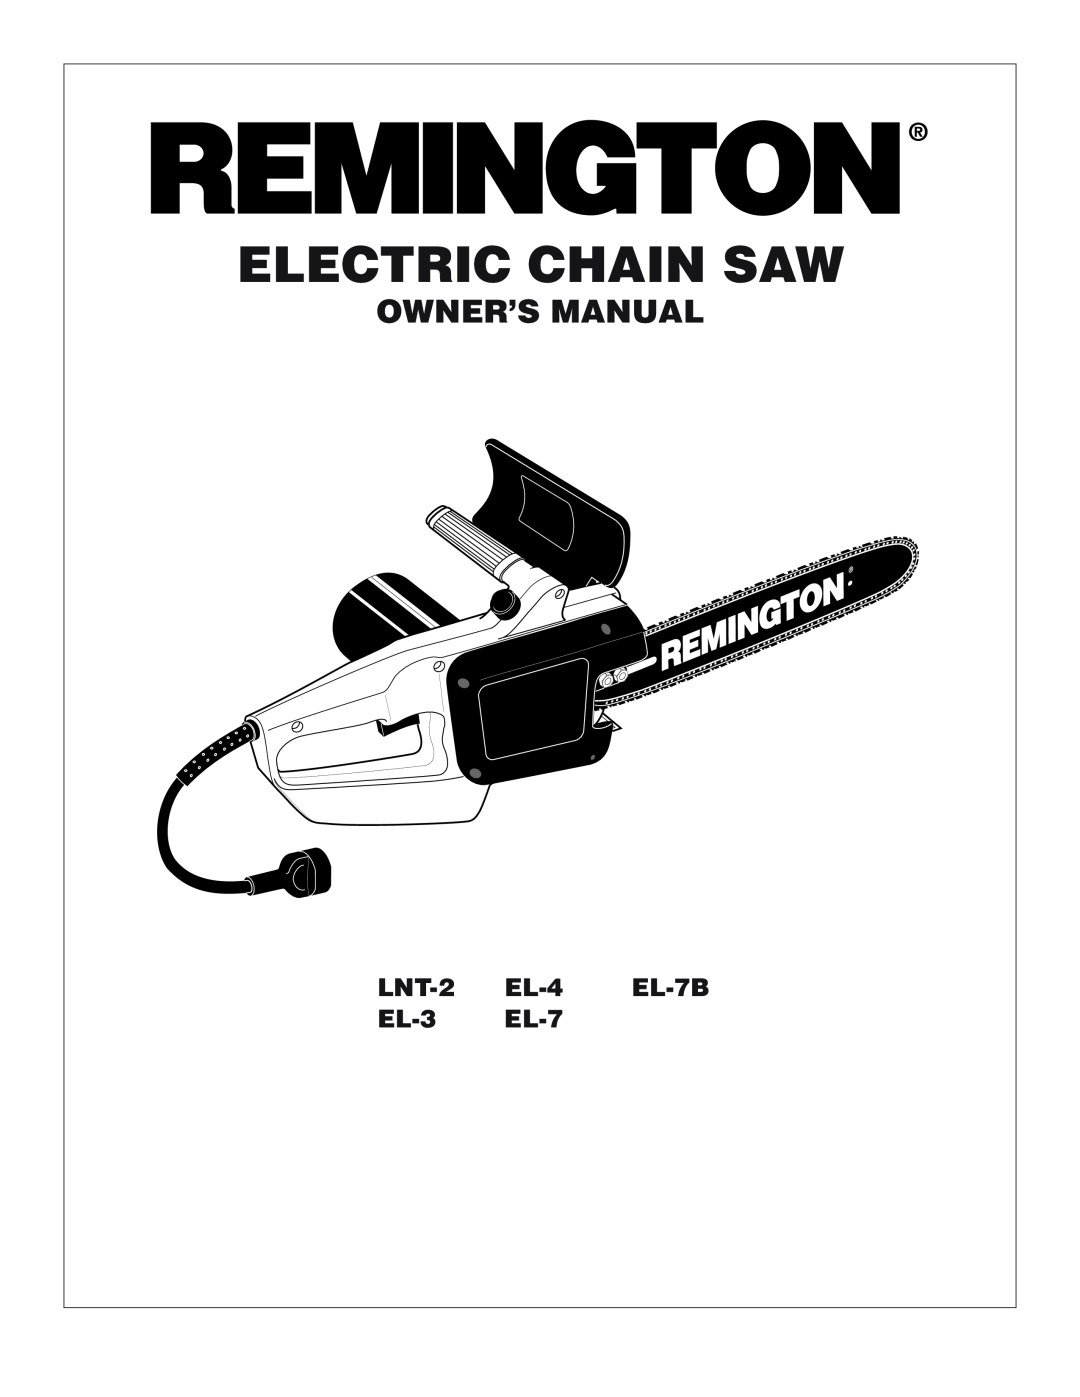 Remington Power Tools LNT-2, EL-4, EL-7B, EL-3, EL-7 owner manual Electric Chain Saw, LNT-2 EL-4 EL-7B EL-3 EL-7 